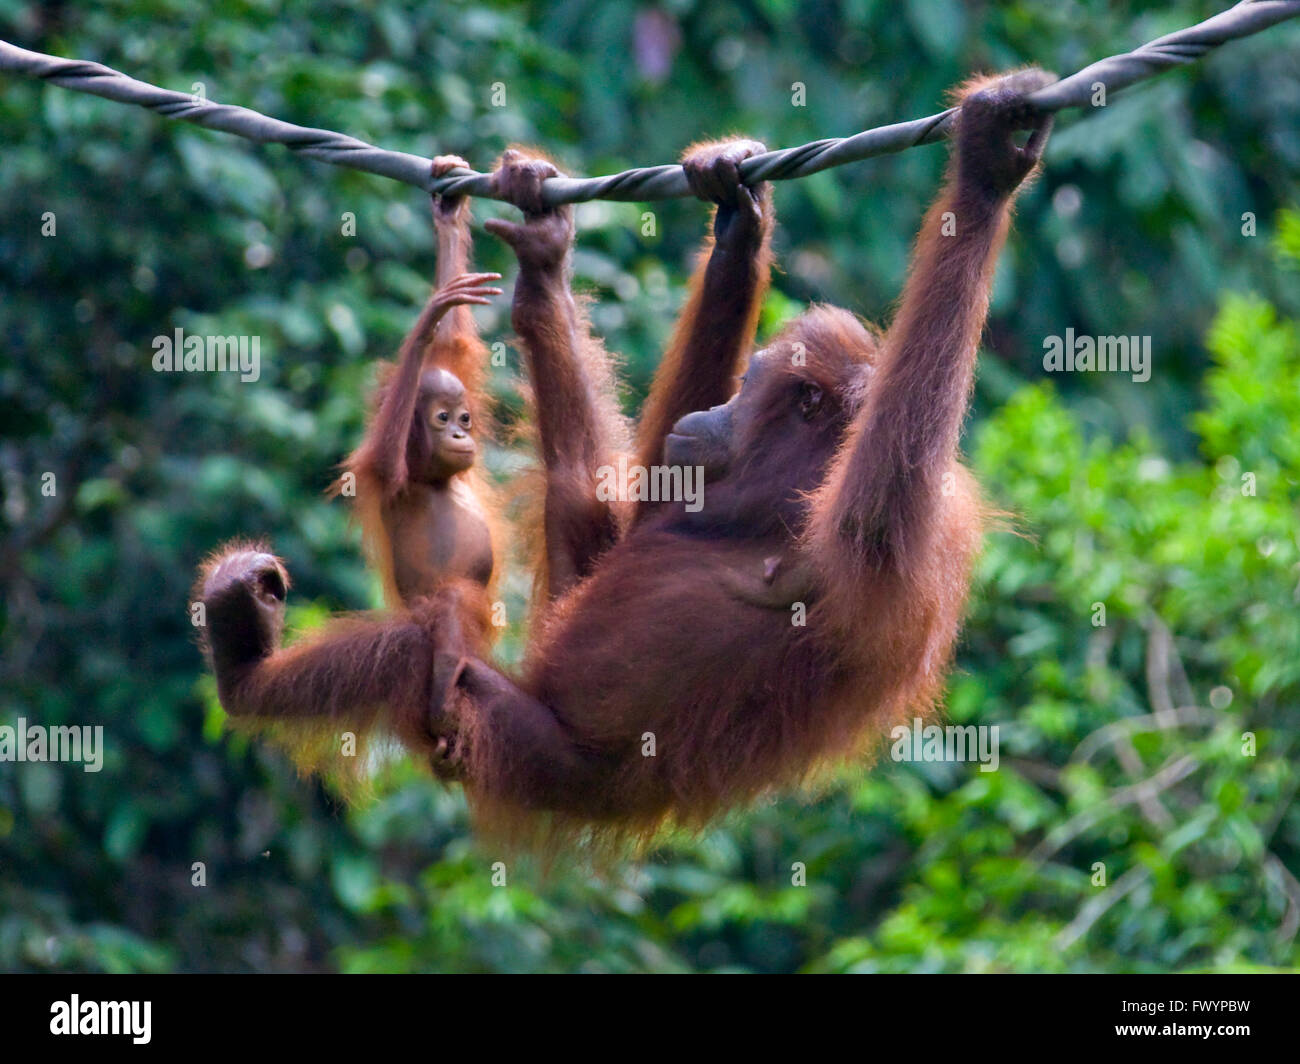 Les orangs-outans, mère de cub, dans la jungle, Sandakan, Malaisie, Bornéo Banque D'Images